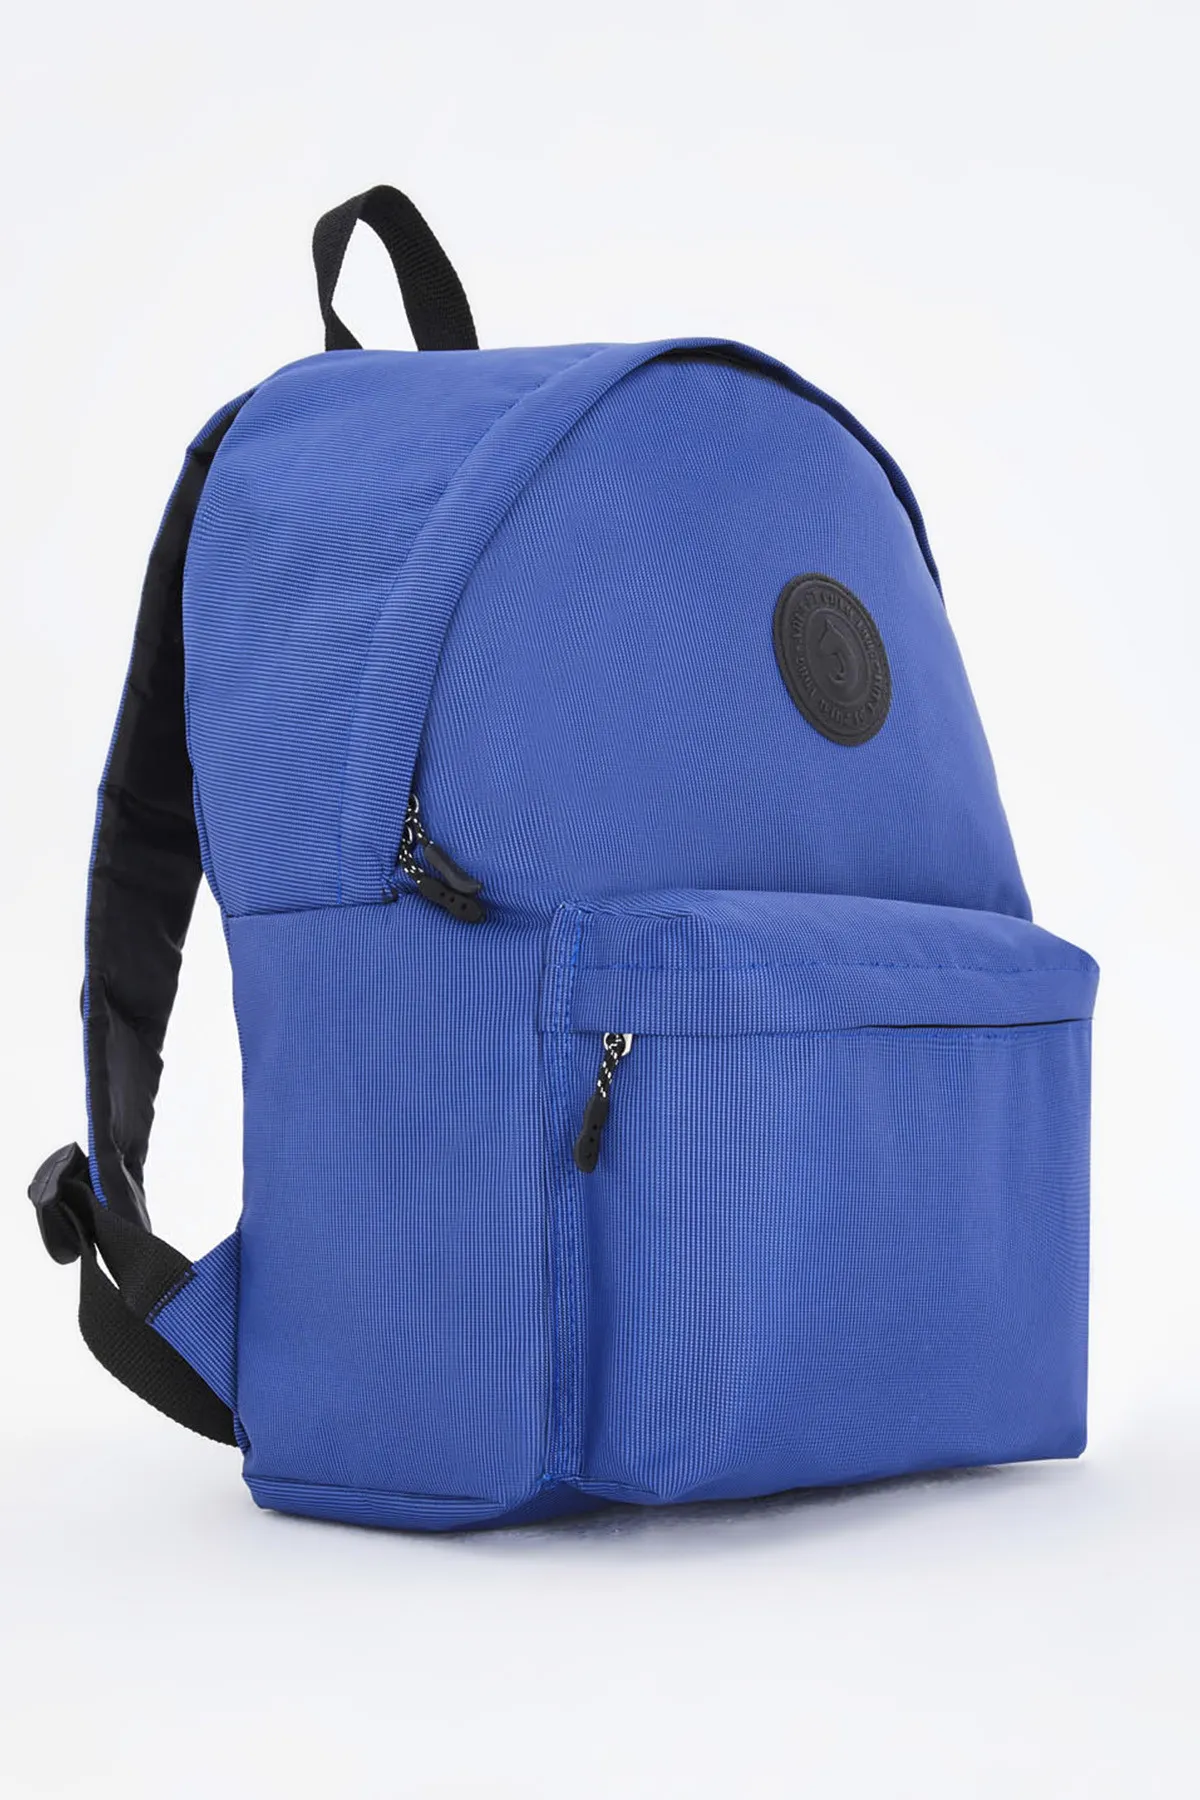 Рюкзак унисекс Di Polo apba0126 темно-синий#5